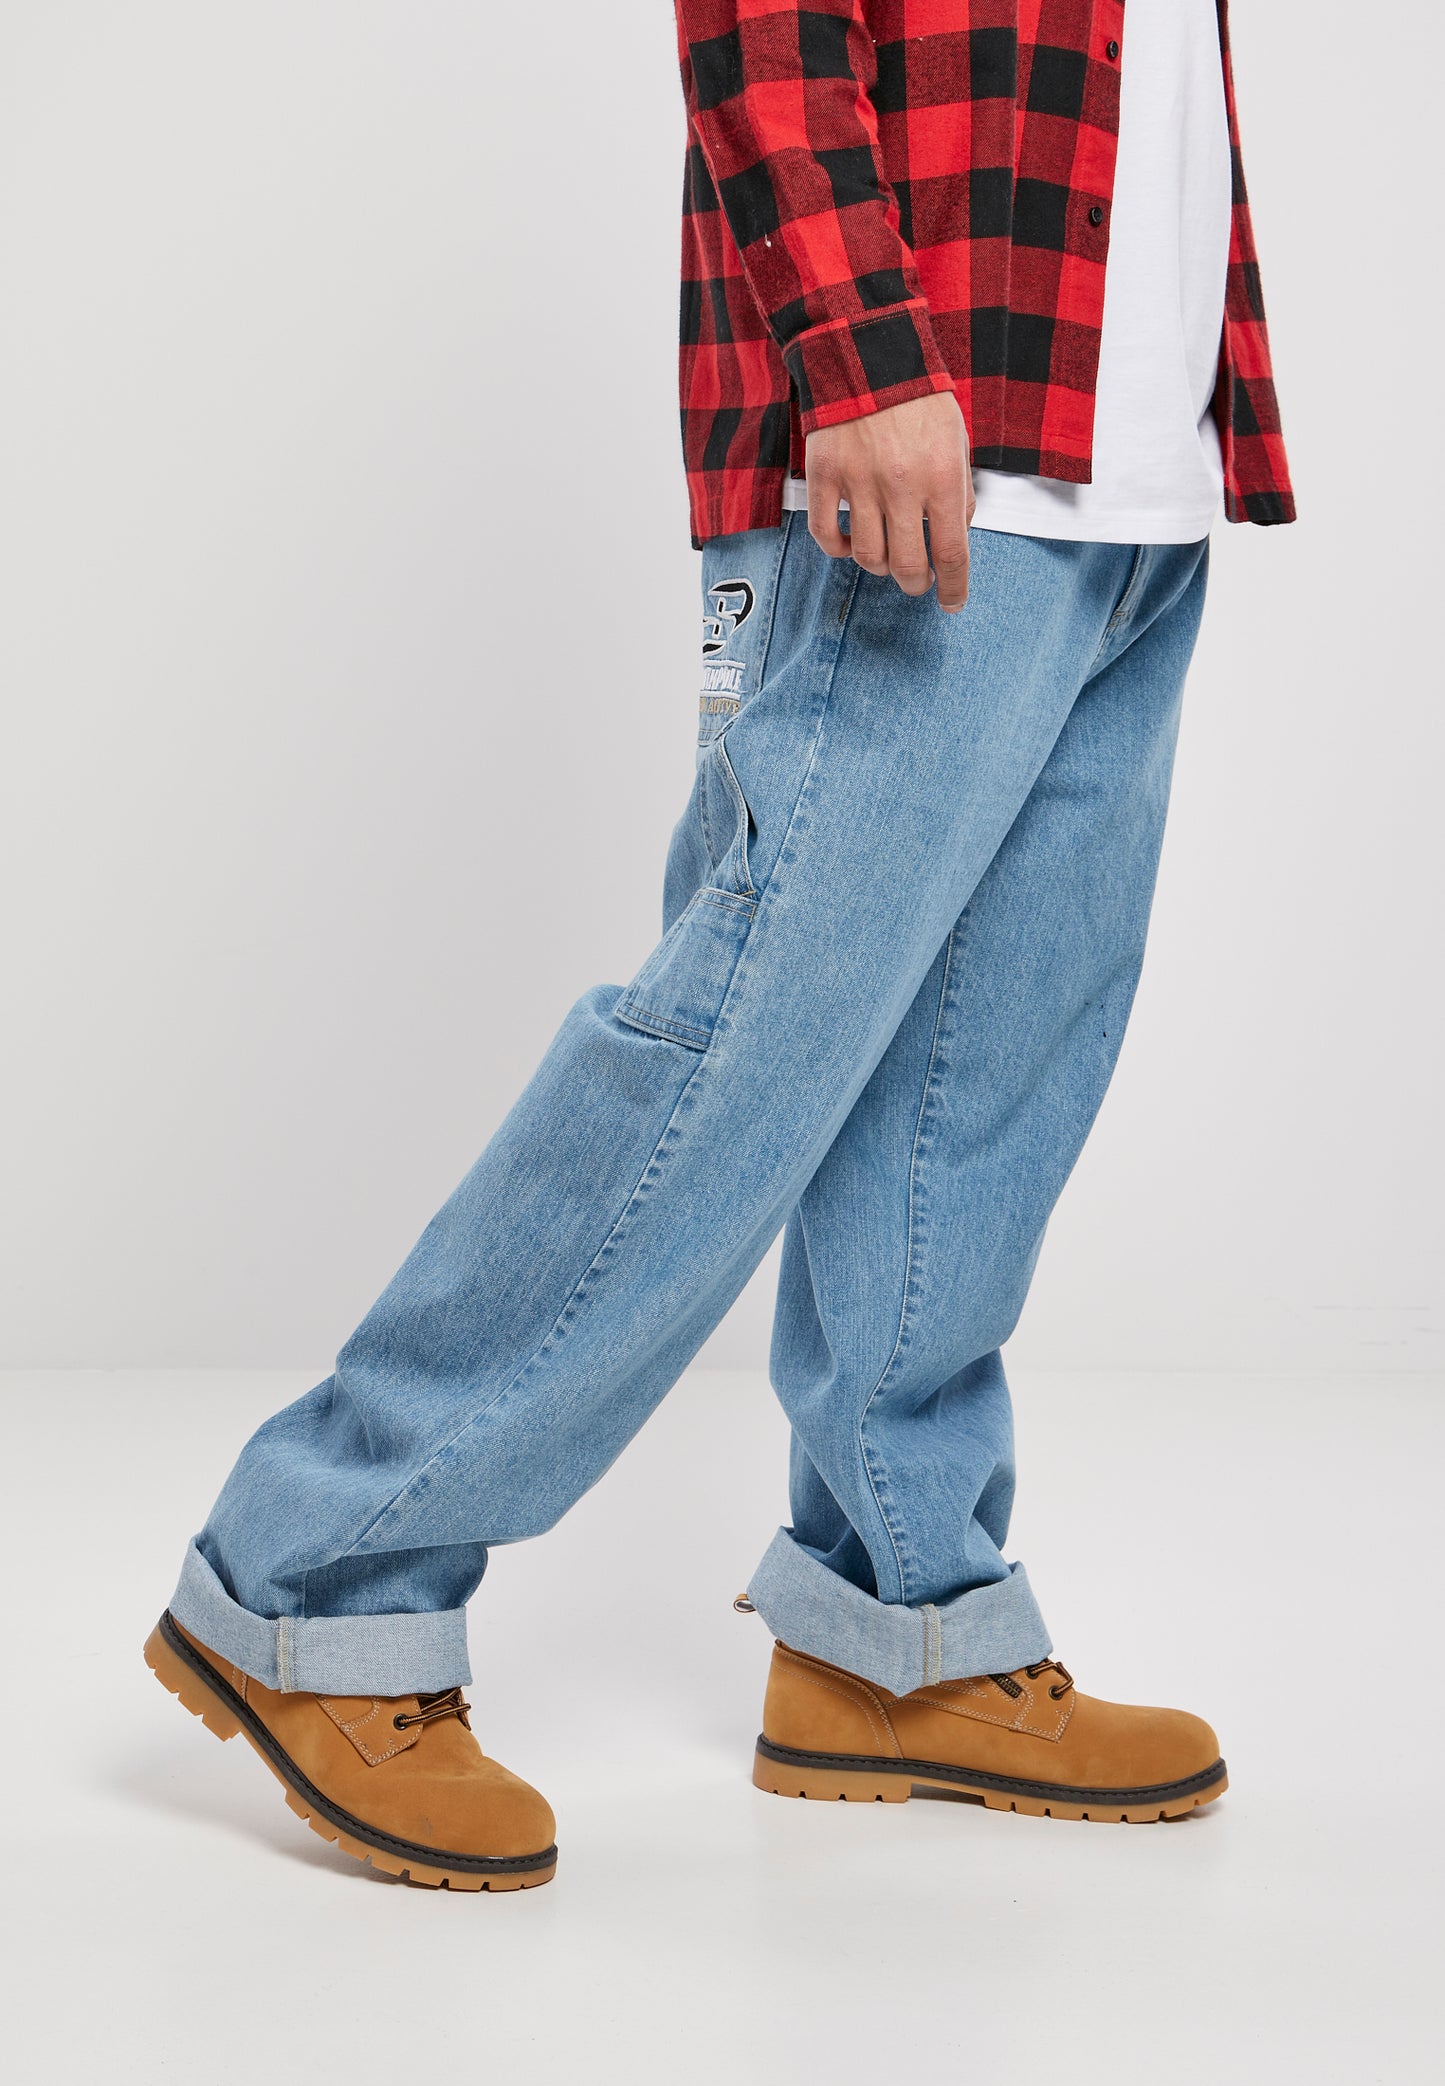 Southpole Denim Hose Urban Active Baggy Jeans